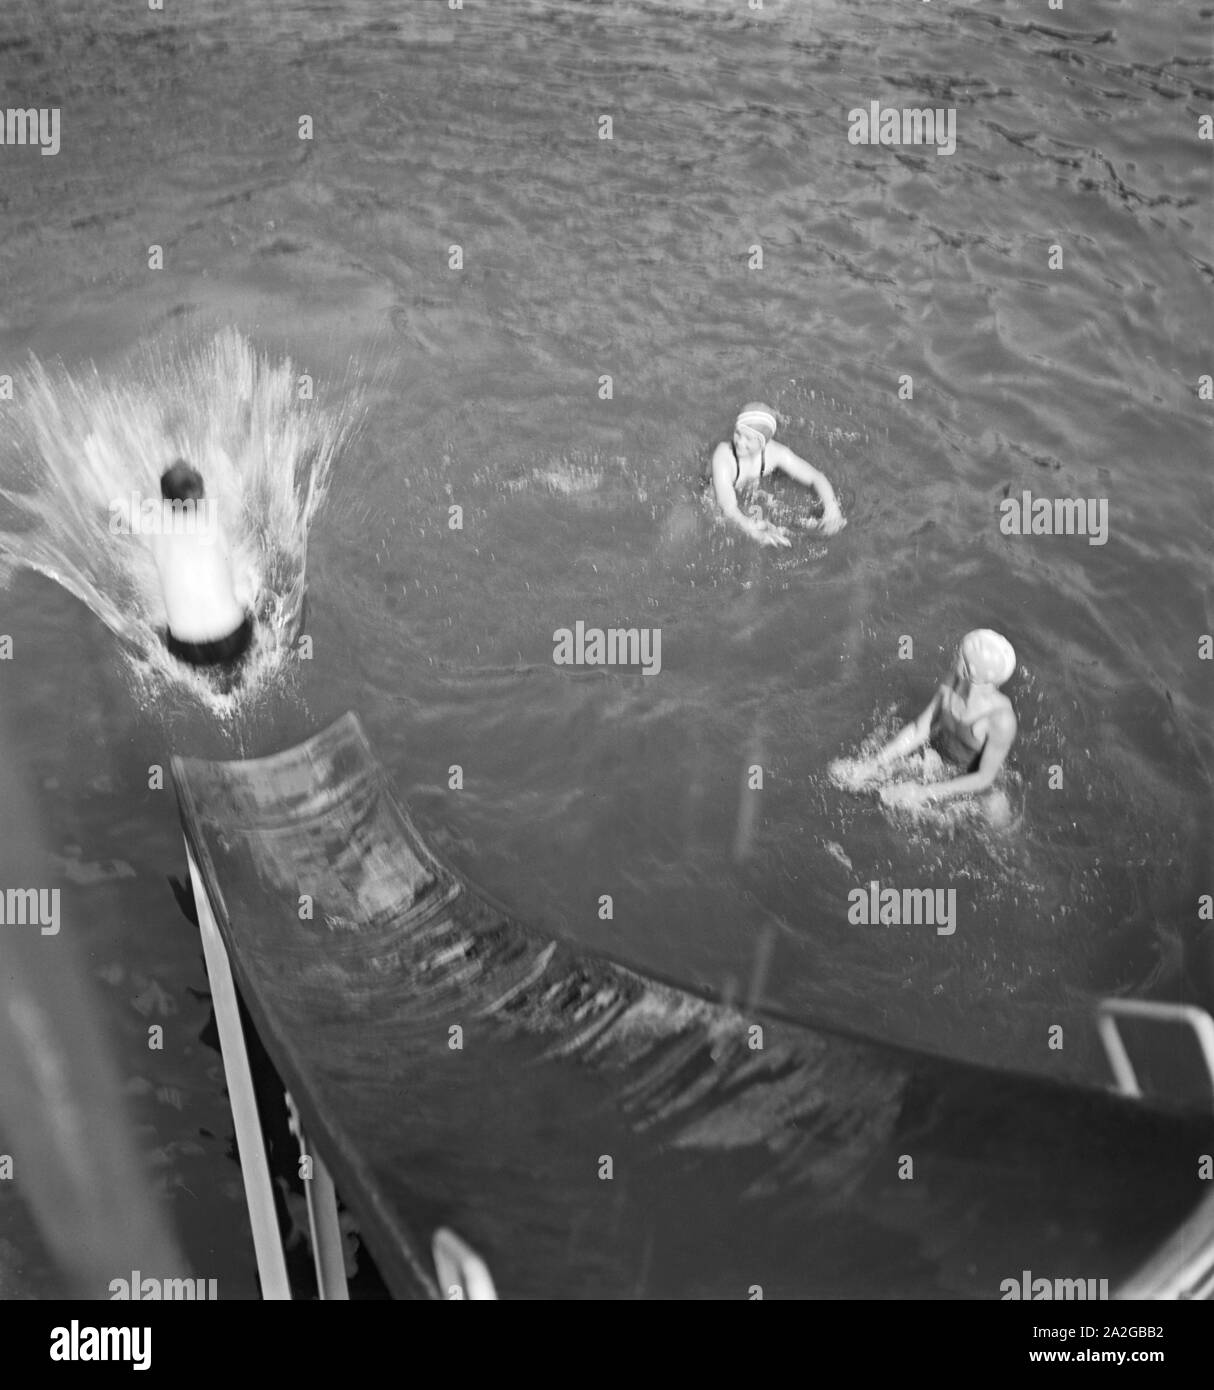 Kinder un einer Wasserrutsche en einem Schwimmbad en Aquisgrán, Alemania 1930er Jahre. Los niños con un tobogán de agua de una piscina pública en Aquisgrán, Alemania, 1930. Foto de stock